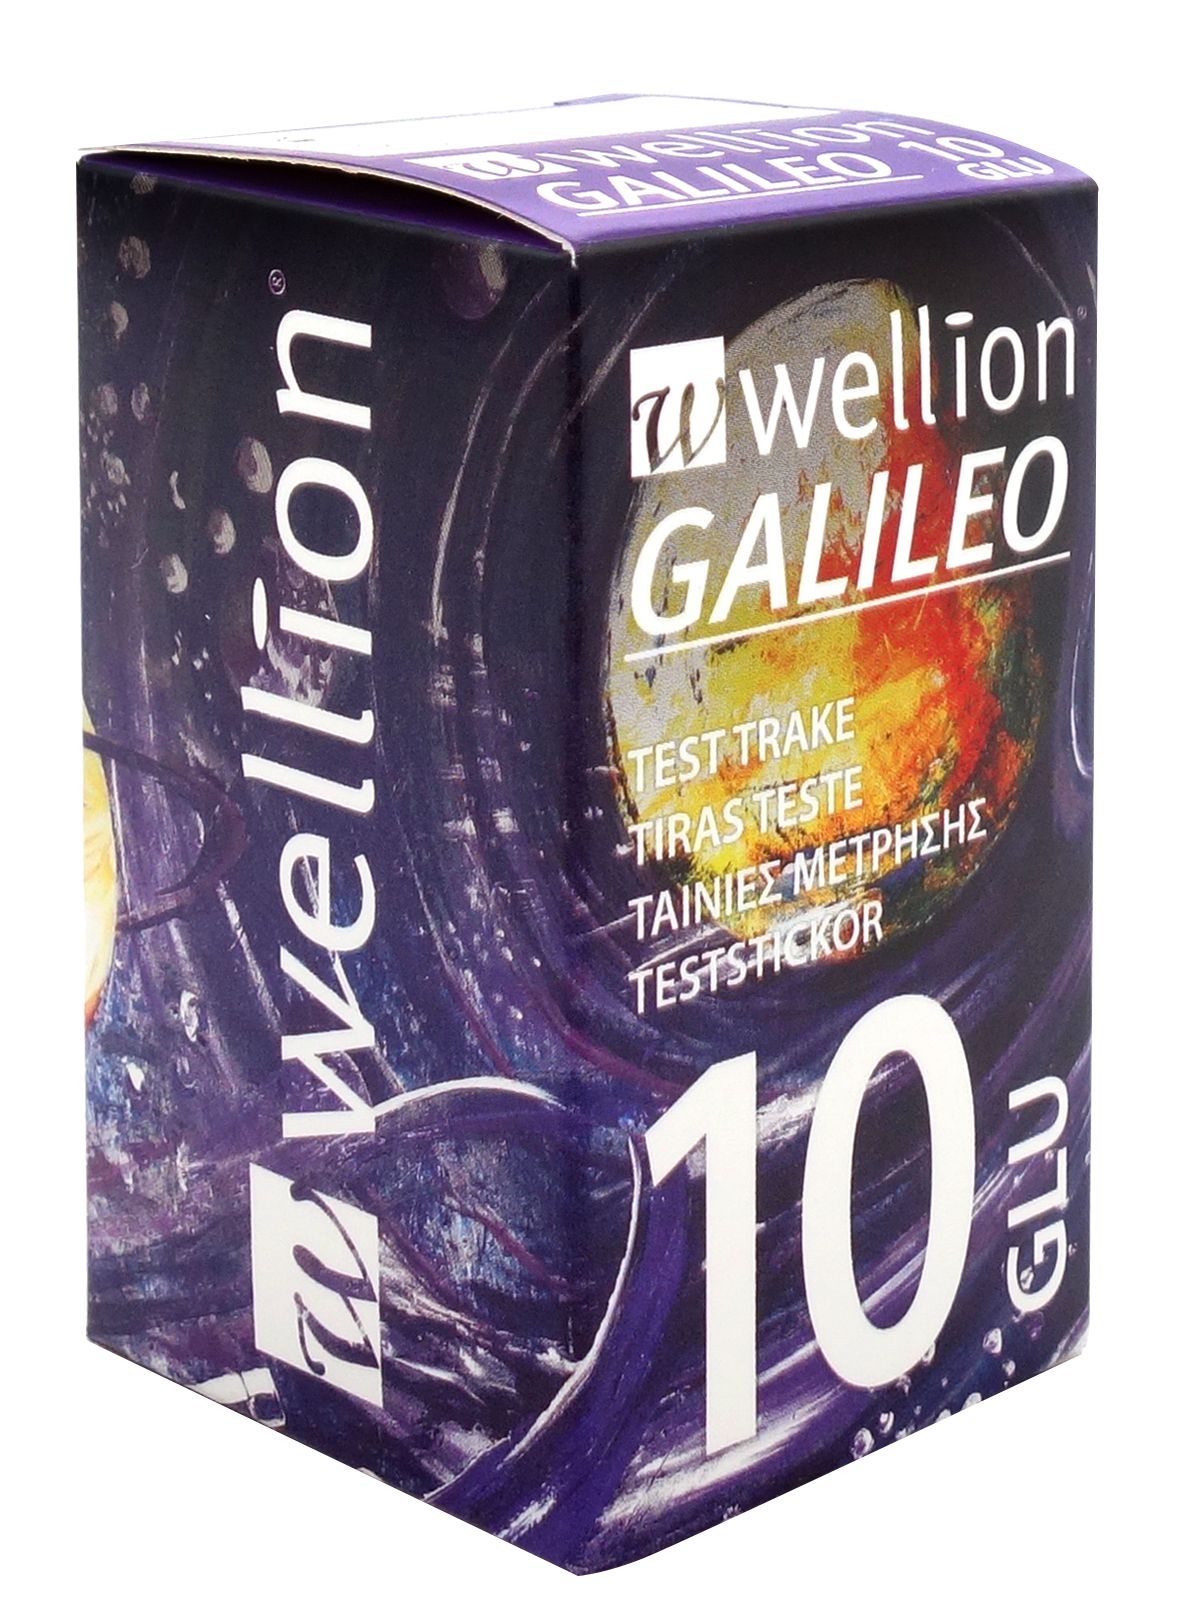 Wellion Galileo Teststickor Glukos 10 st